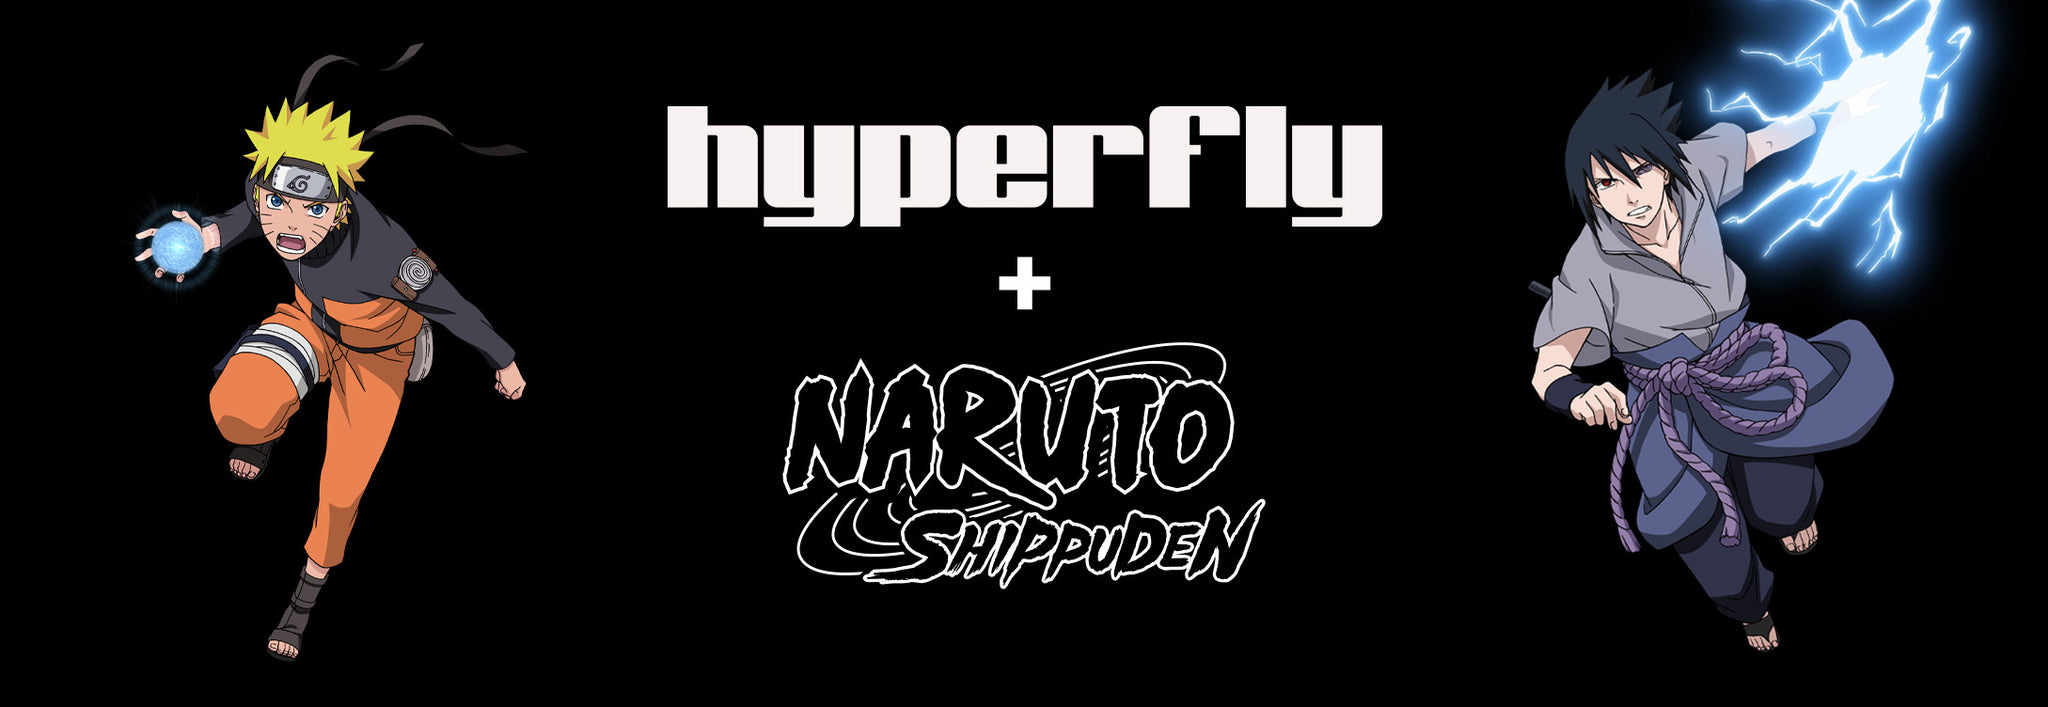 Texto que diz Hyperfly + Naruto Shippuden com uma imagem de Naruto Uzumaki e Sasuke Uchiha.